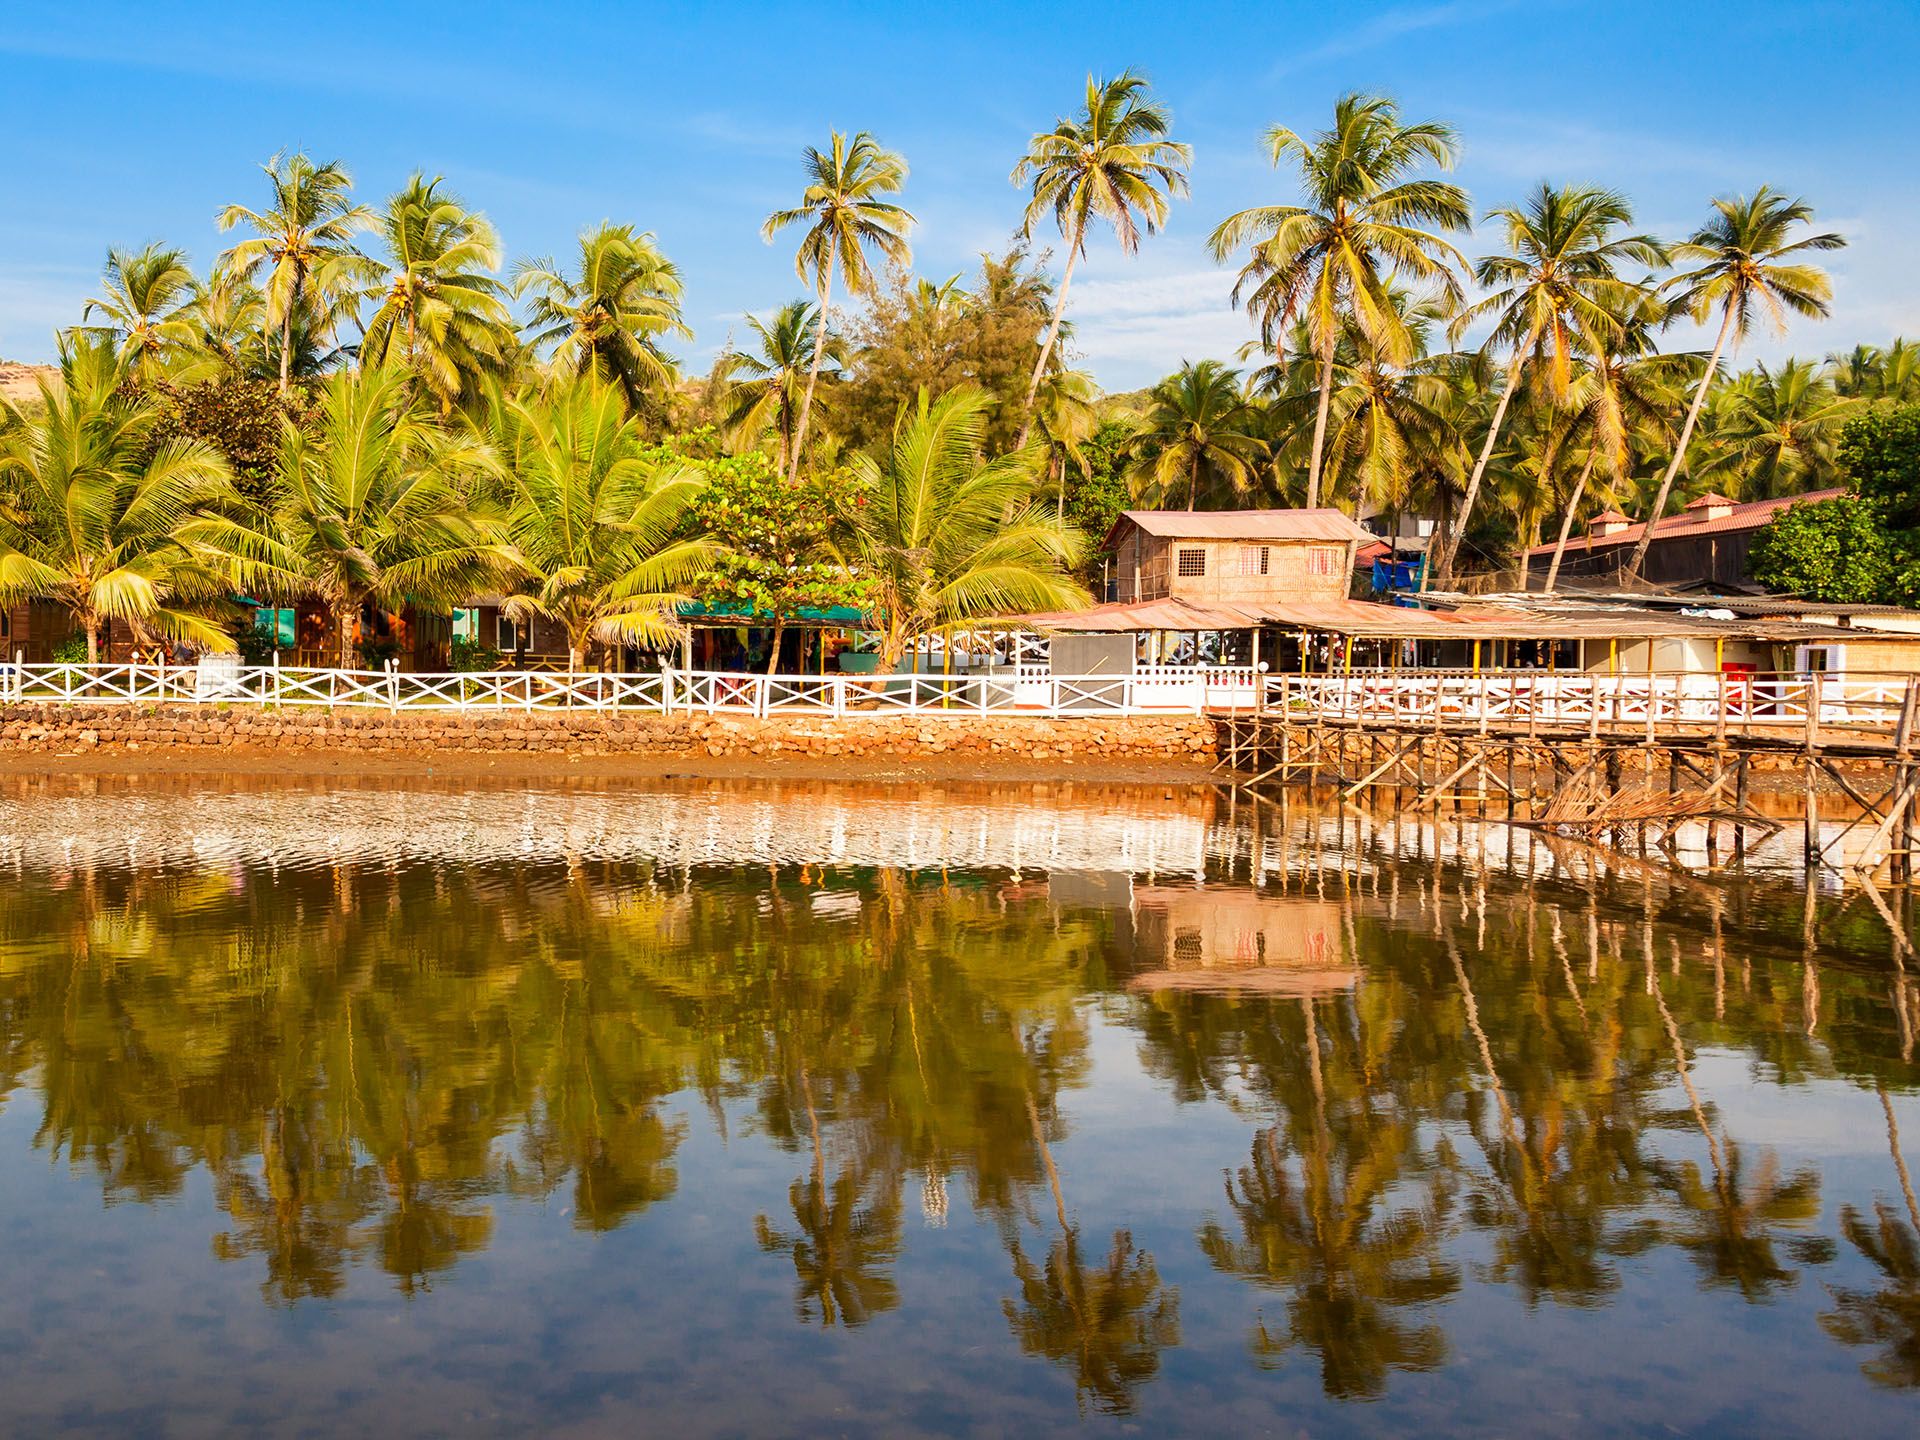 Resort huts on Mandrem beach in north Goa, India © saiko3p/Shutterstock